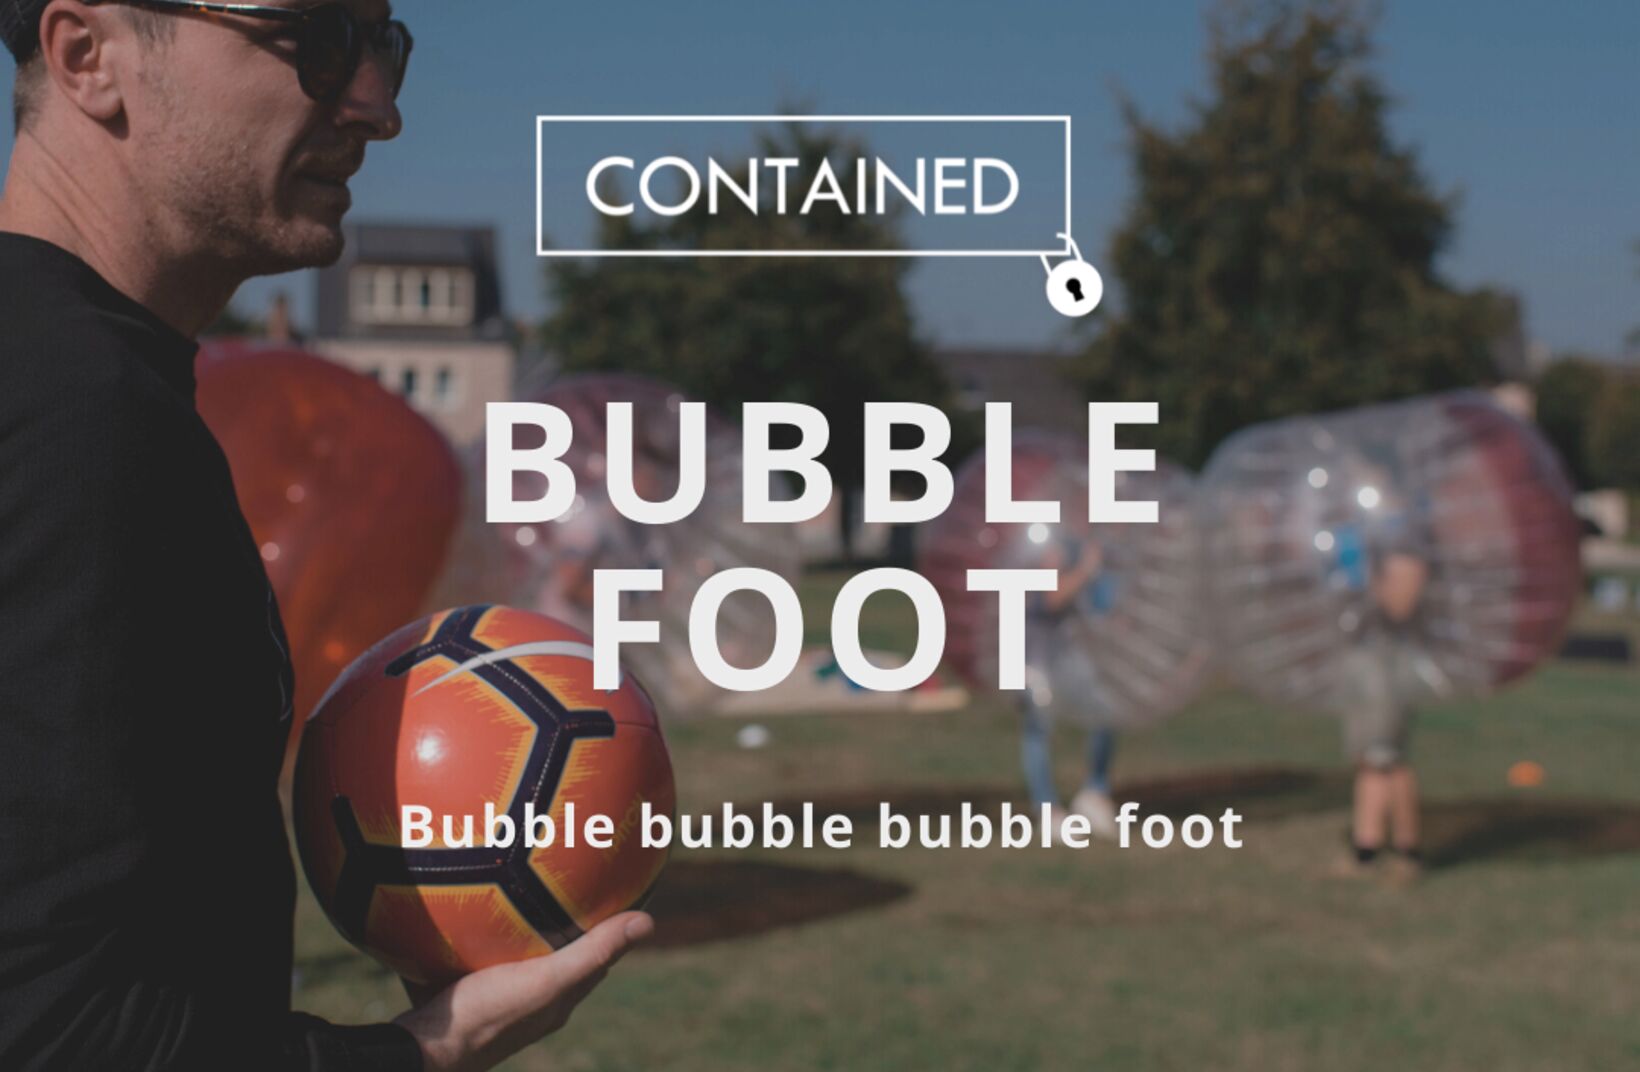 Bubble - Ballon de Foot